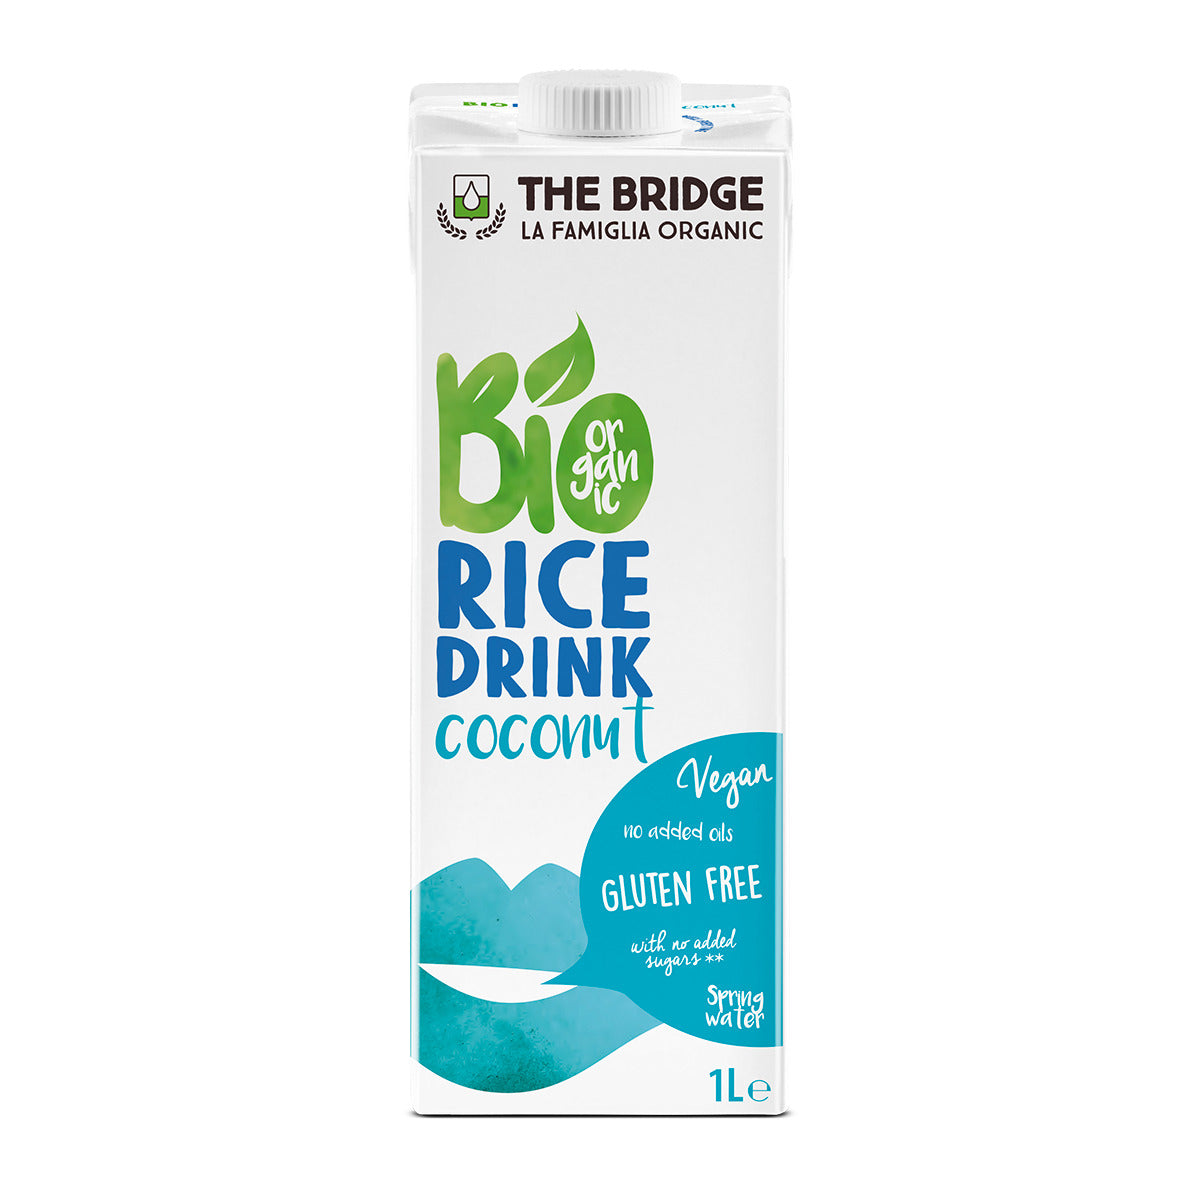 משקה אורז וקוקוס אורגני | דה ברידג - מארז 12 יחידות - The Bridge Bio - פריקפוא